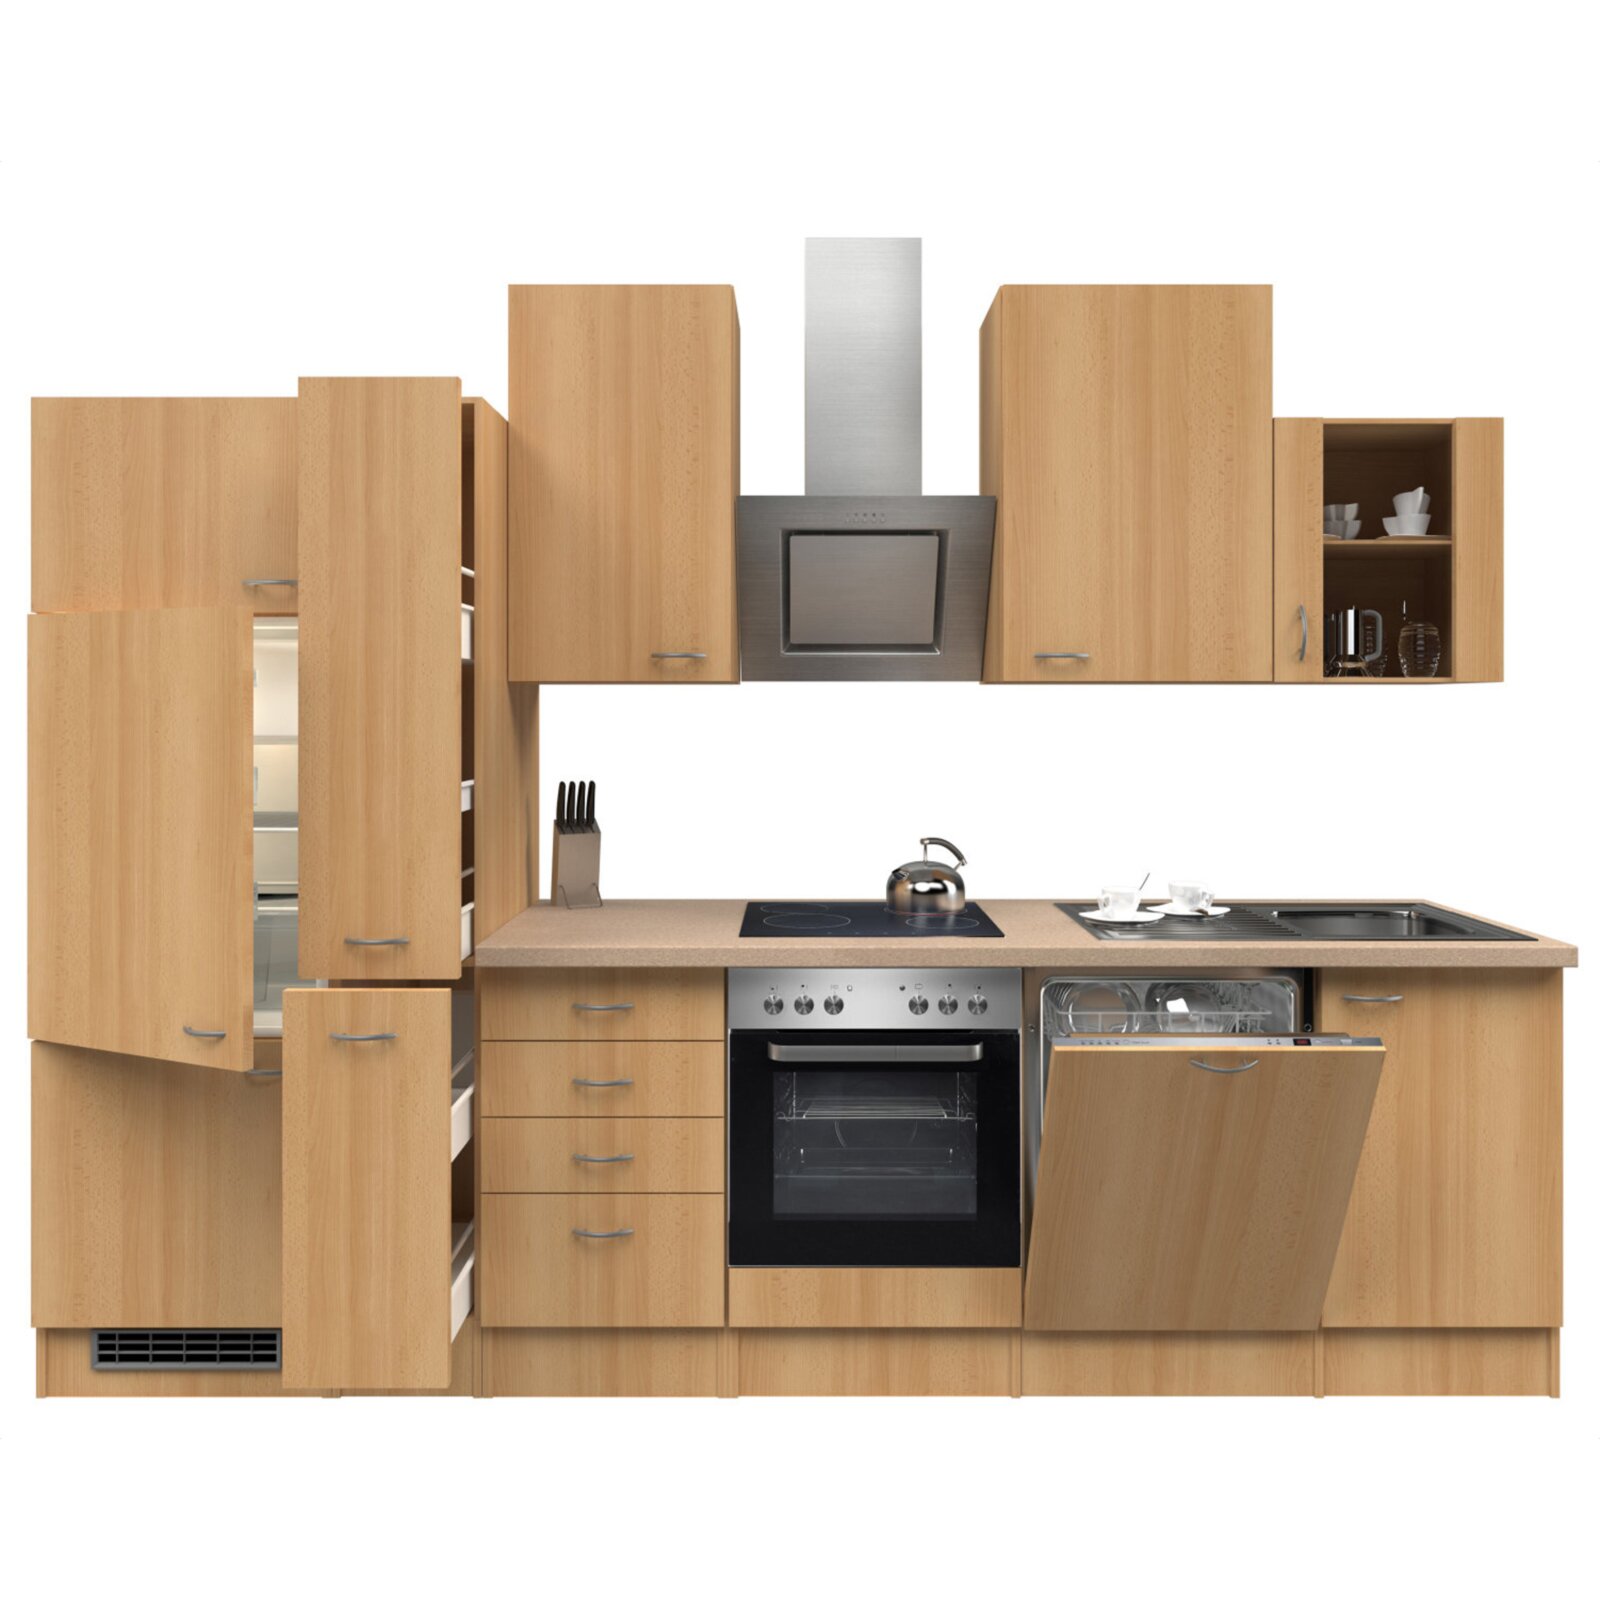 Küchenblock NANO - Buche - mit E-Geräten - 310 cm | Online bei ROLLER kaufen